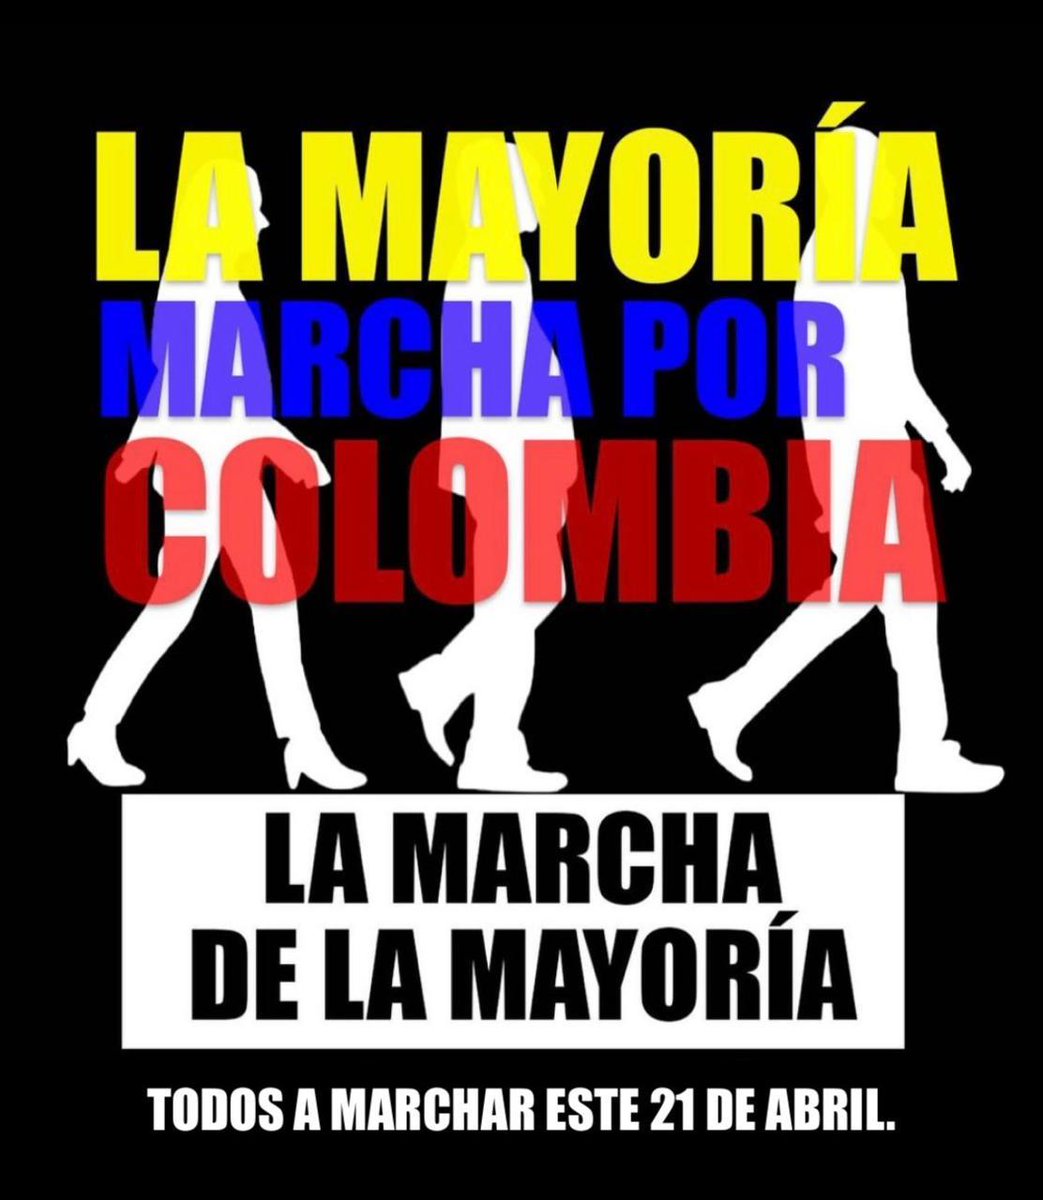 #ALaCalle21Abril  #ColombiaMarcha 🇨🇴
#ColombianosExteriorMarchan 
#NoALasMalasReformas 
#ColombiaSinAgua #ColombiaSinEnergía 
#Artículo109ConstitucionalYa